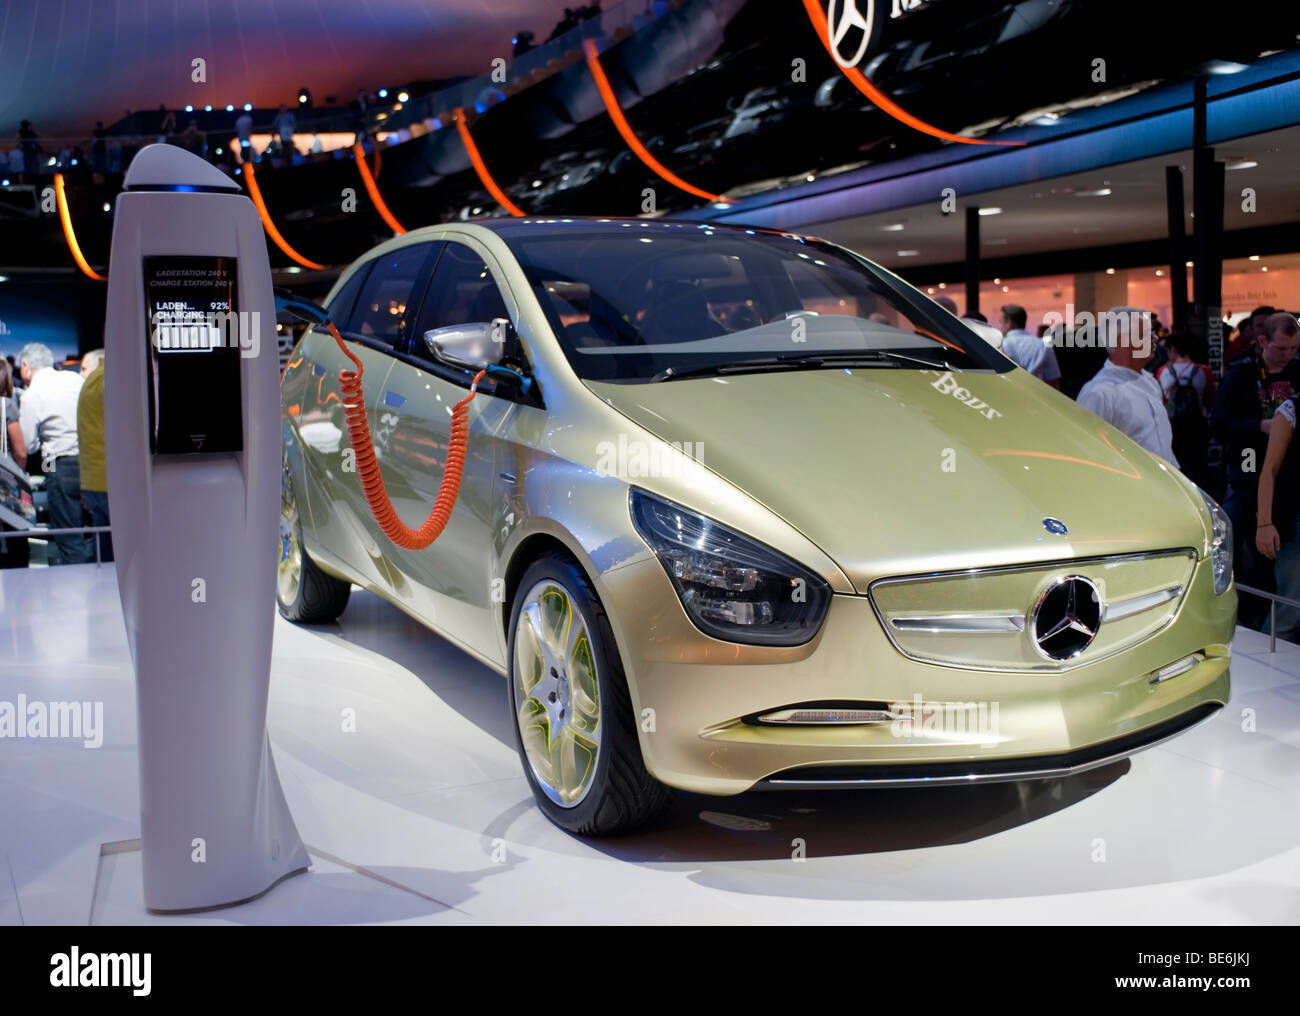 Mercedes Blue Zero alimentato con batterie al litio auto elettrica prototipo in mostra al Salone di Francoforte 2009 Foto Stock